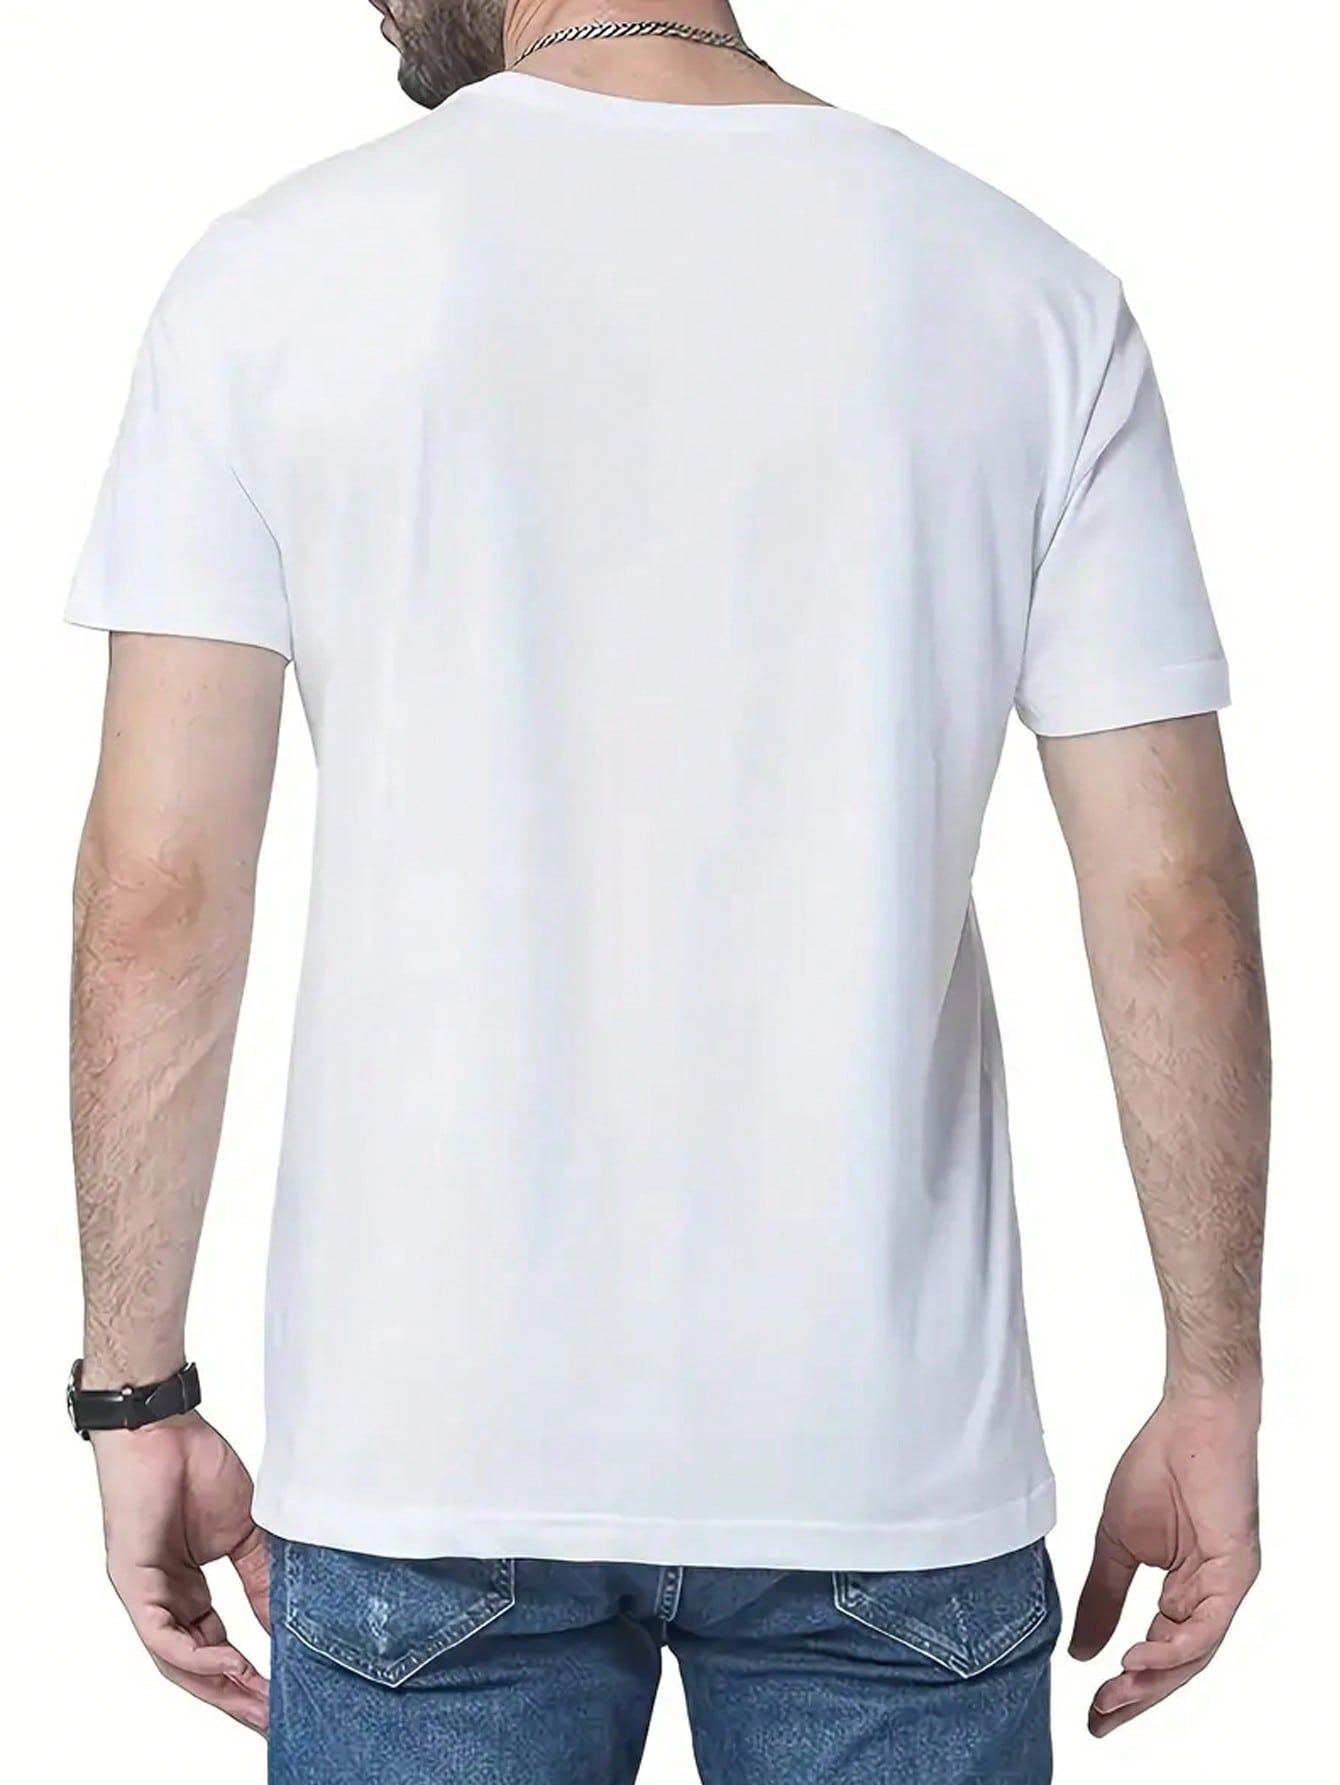 Мужская футболка с коротким рукавом, круглым вырезом и принтом со слоганом, белый футболка мужская оверсайз с коротким рукавом модный повседневный пуловер с принтом с круглым вырезом повседневная одежда лето